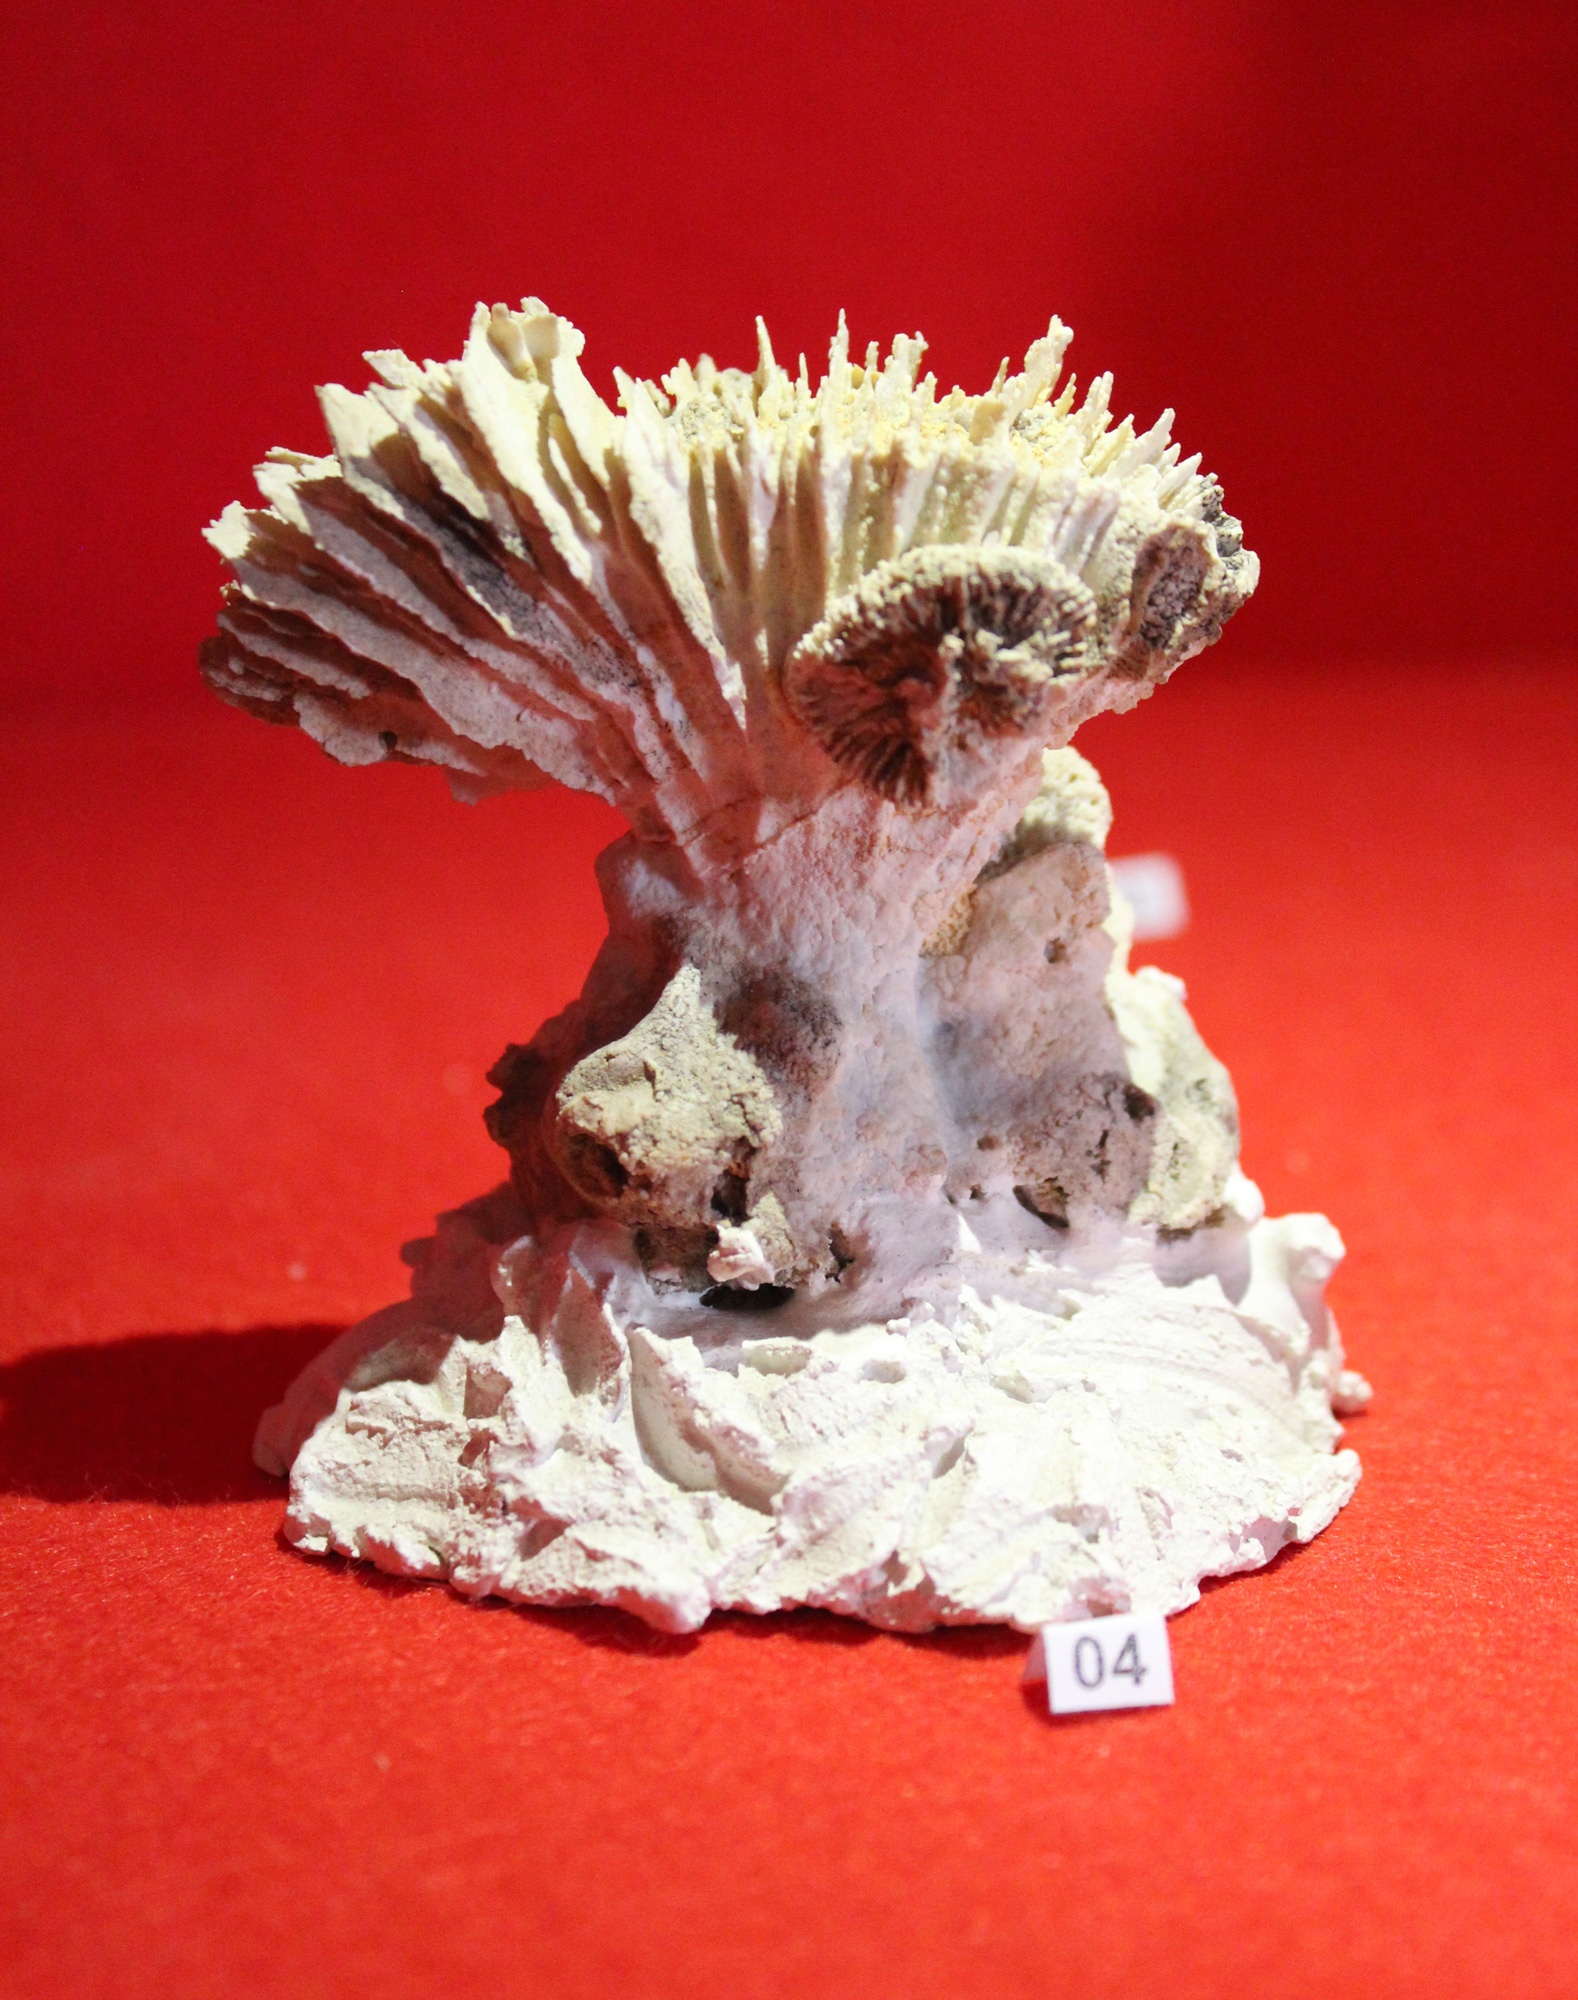 Rhipidogyra alata (Quenstedt 1858) (Korallen- und Heimatmuseum Nattheim CC BY-NC-SA)